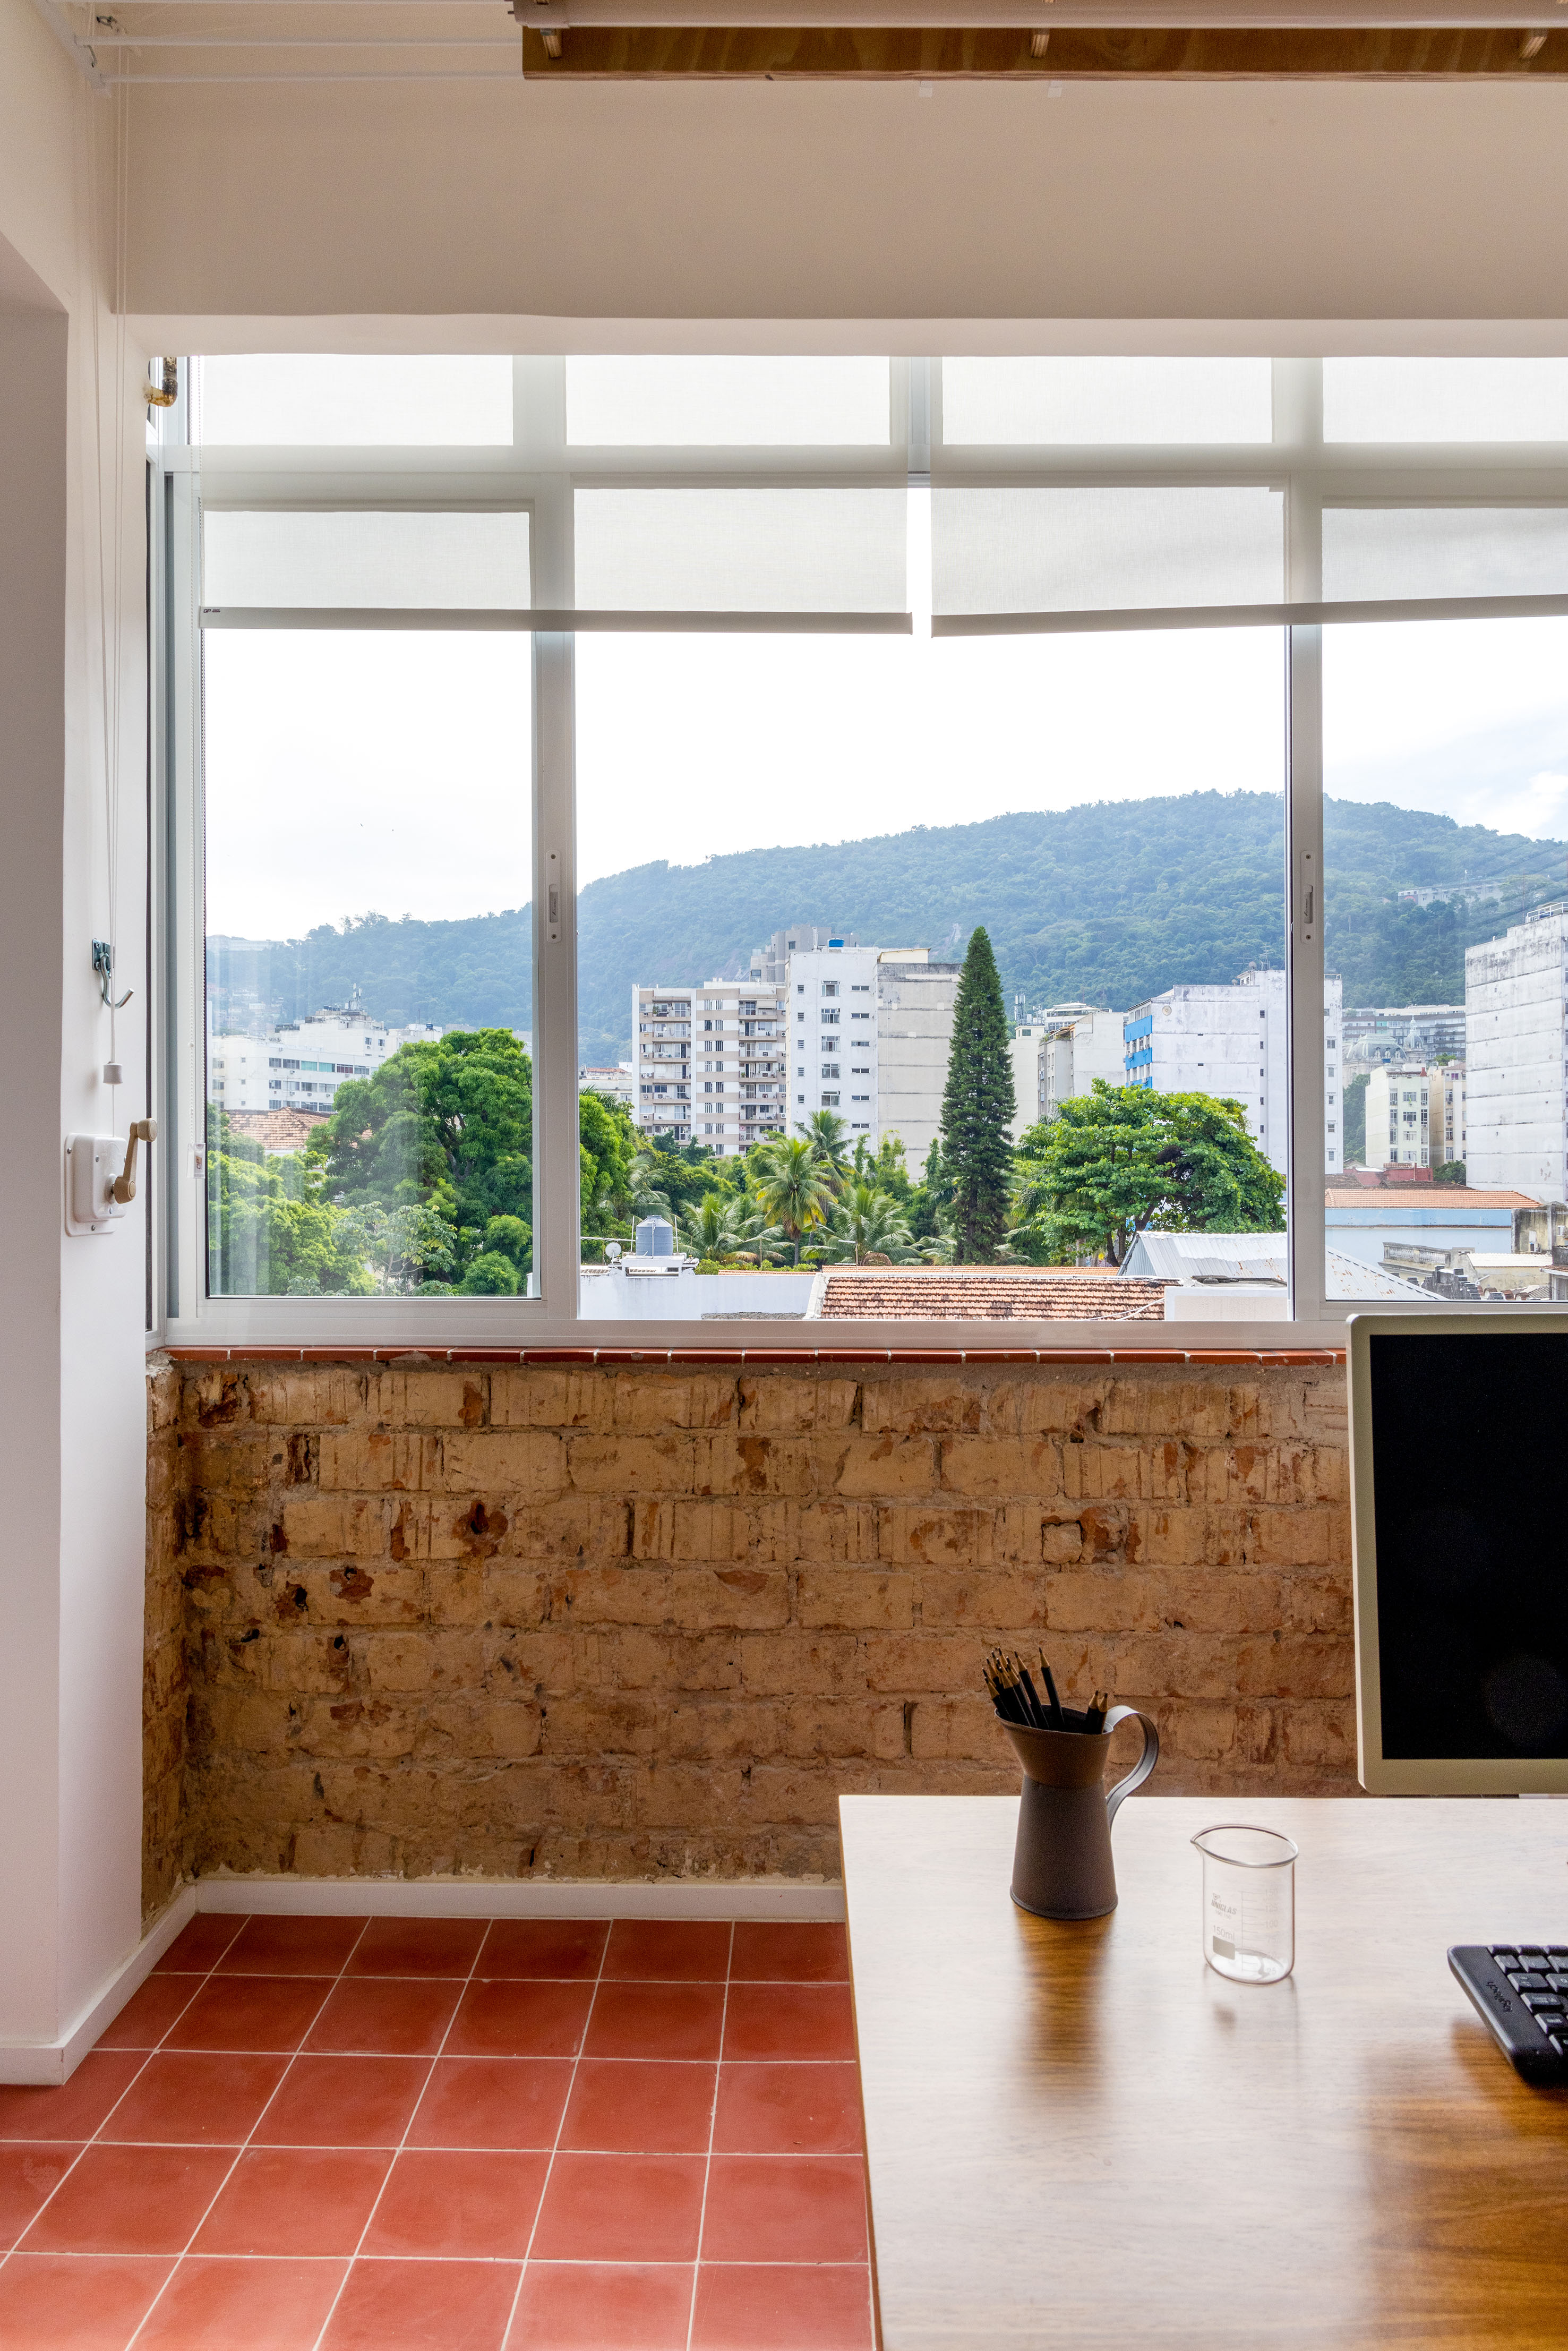 Ladrilhos hidráulicos trazem charme vintage e cor à apê de 90 m². Projeto de Ana Neri. Na foto, home office, janela, parede de tijolinhos.